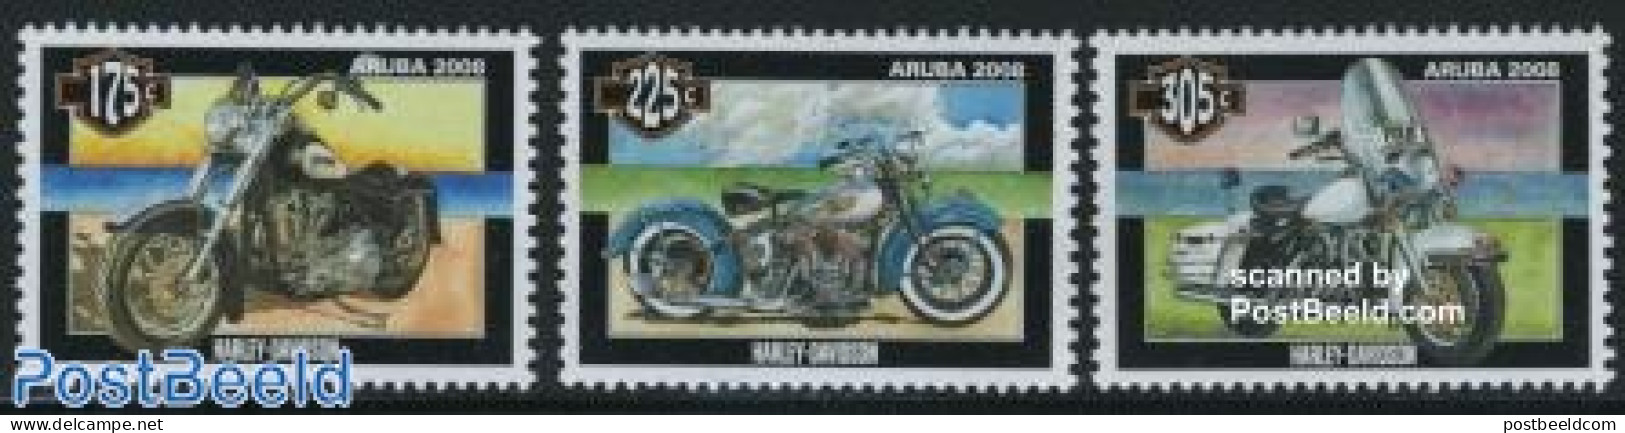 Aruba 2008 Harley Davidson 3v, Mint NH, Transport - Motorcycles - Motorräder